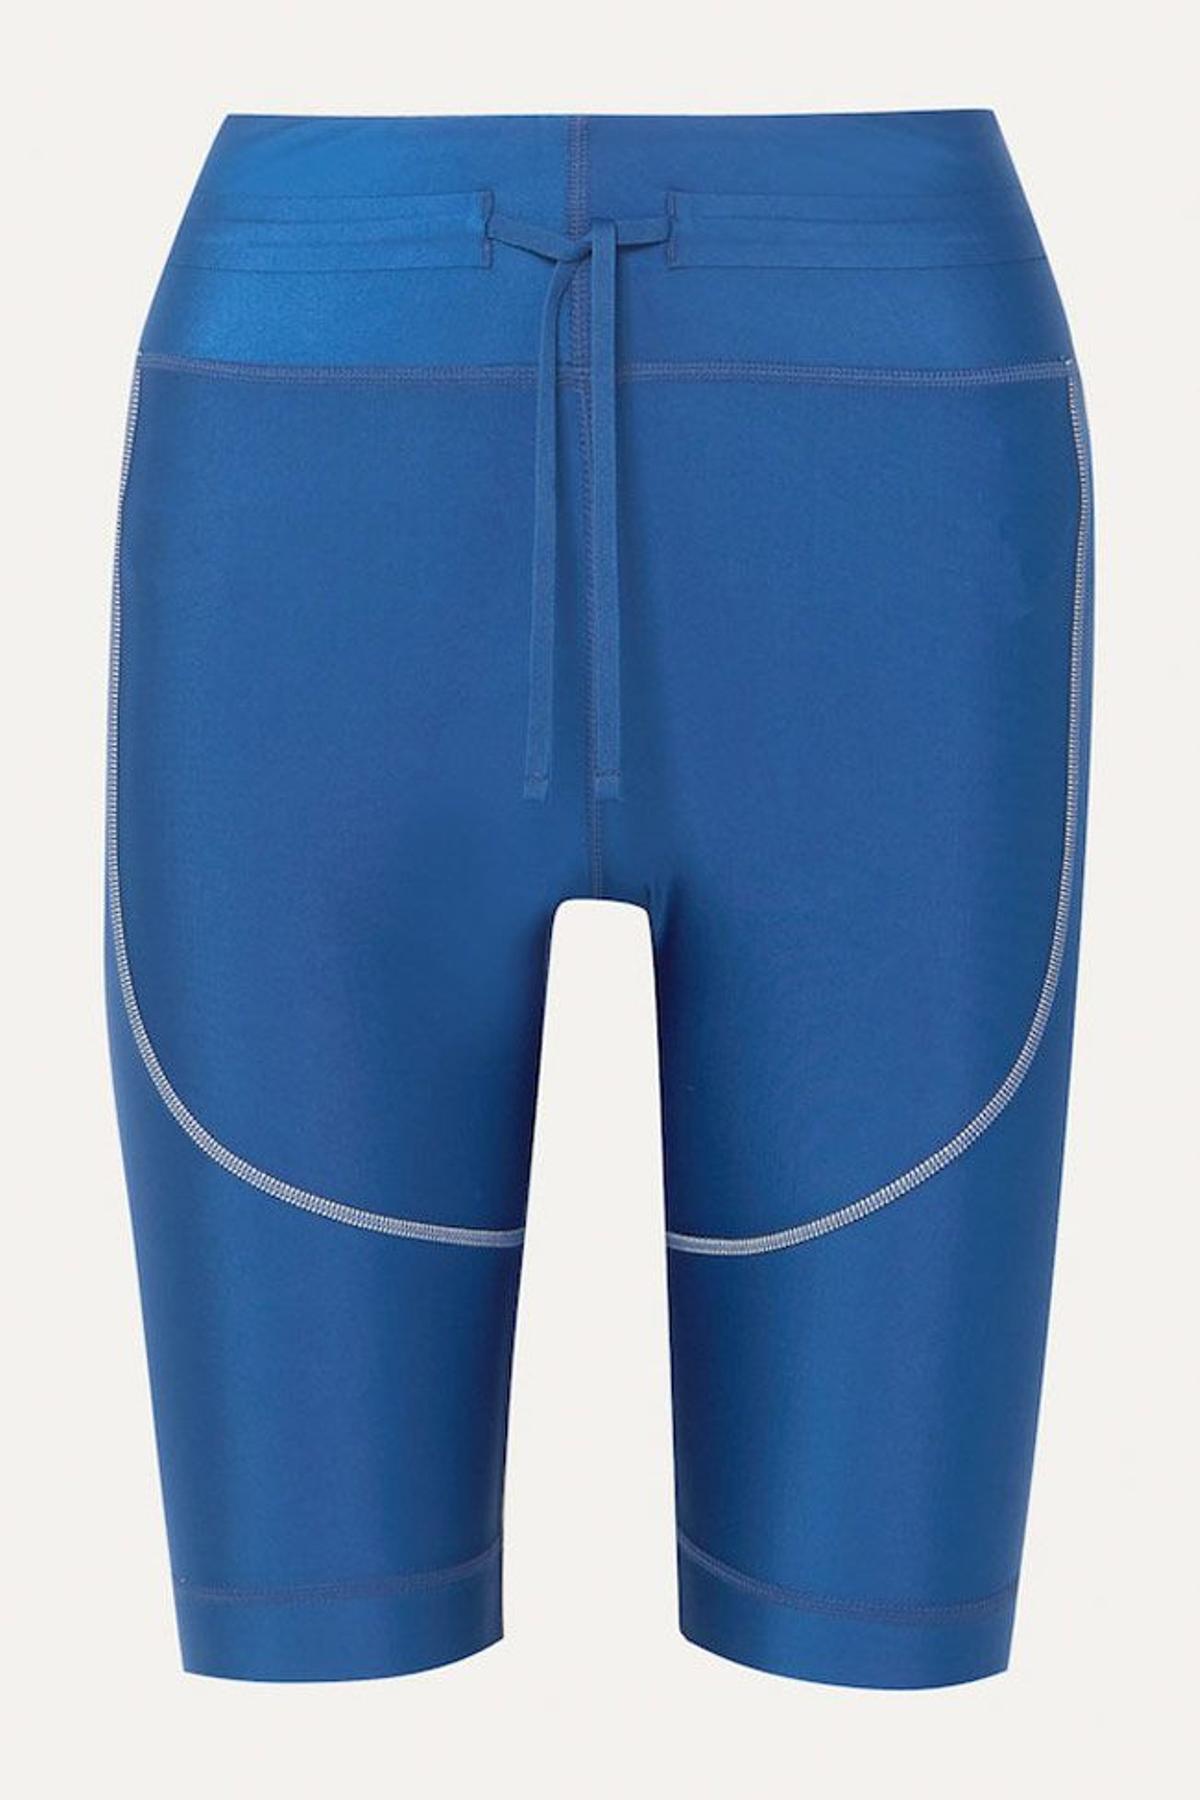 Pantalón ciclista azul, de las rebajas de Nike